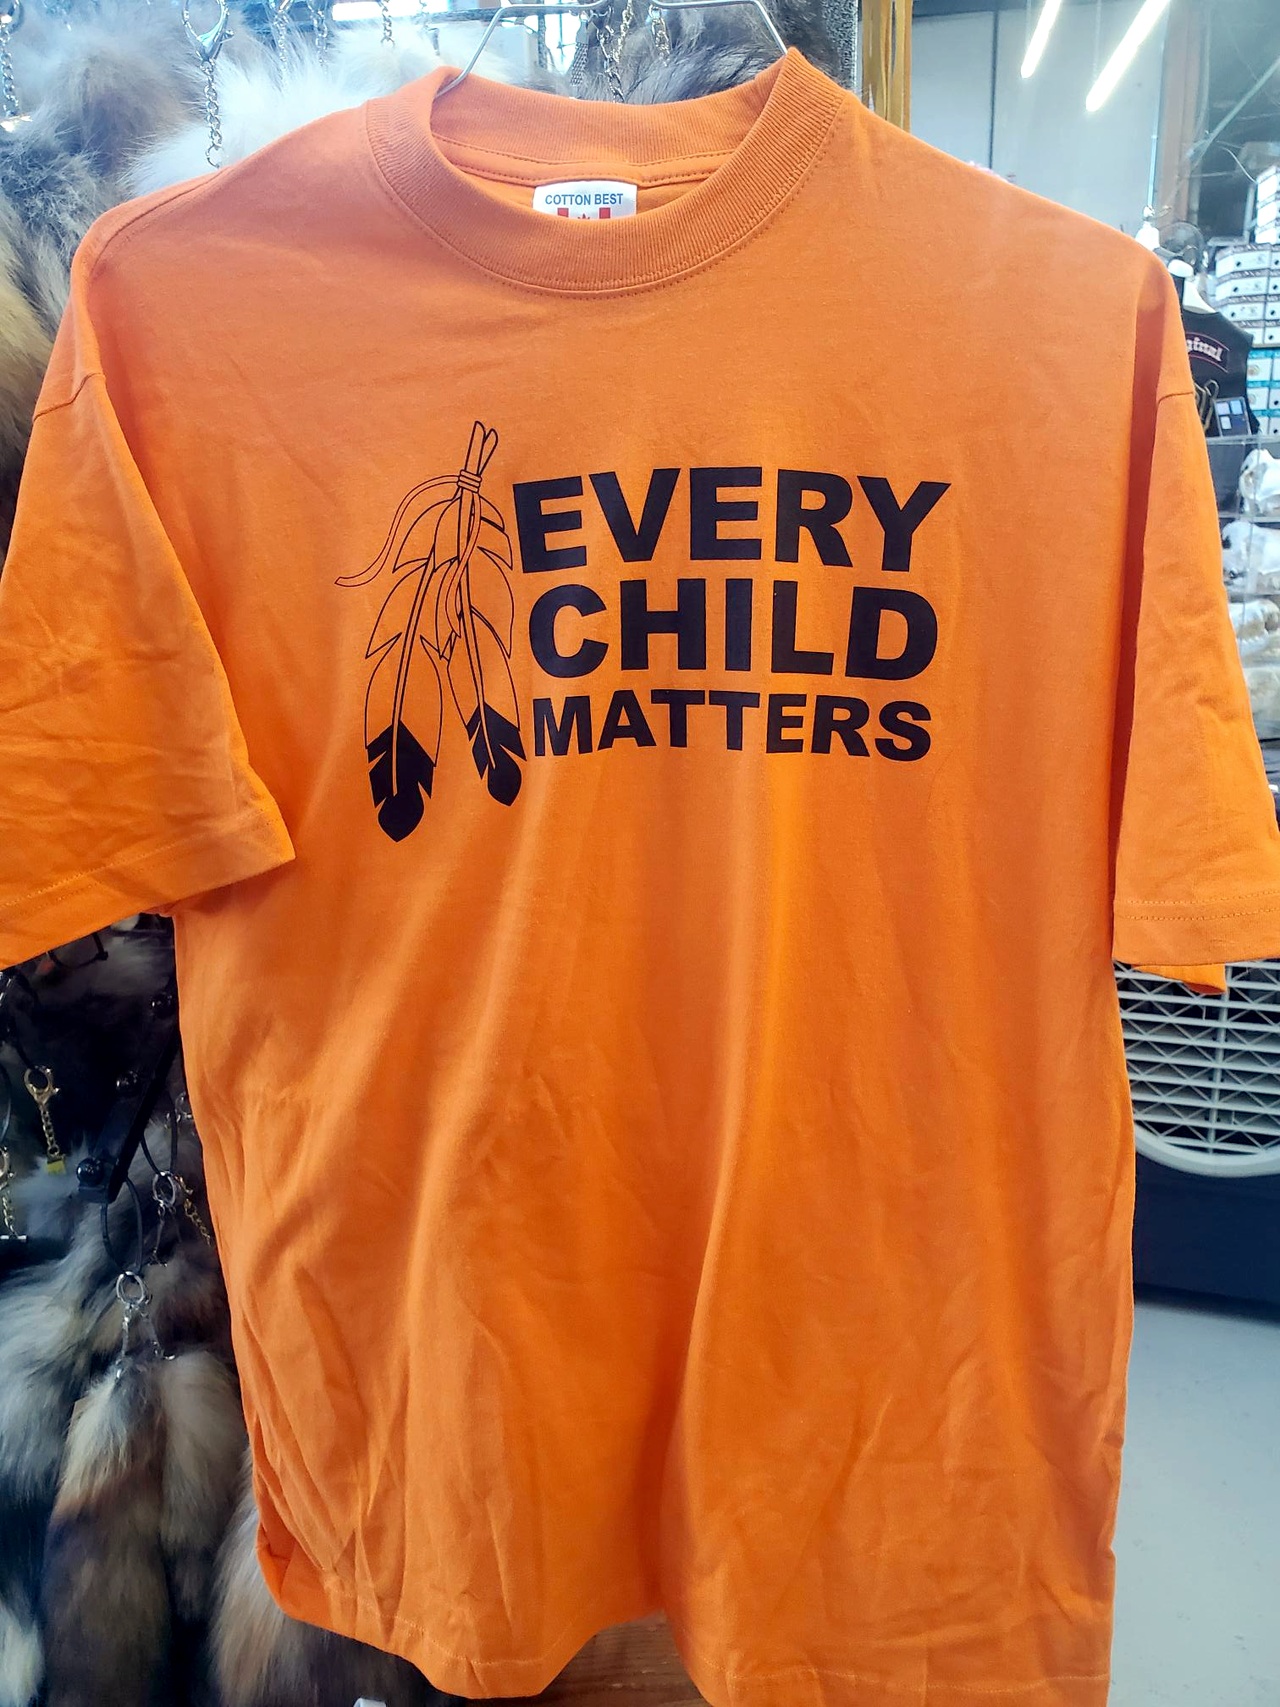 Every Child Matters (Orange Shirts)